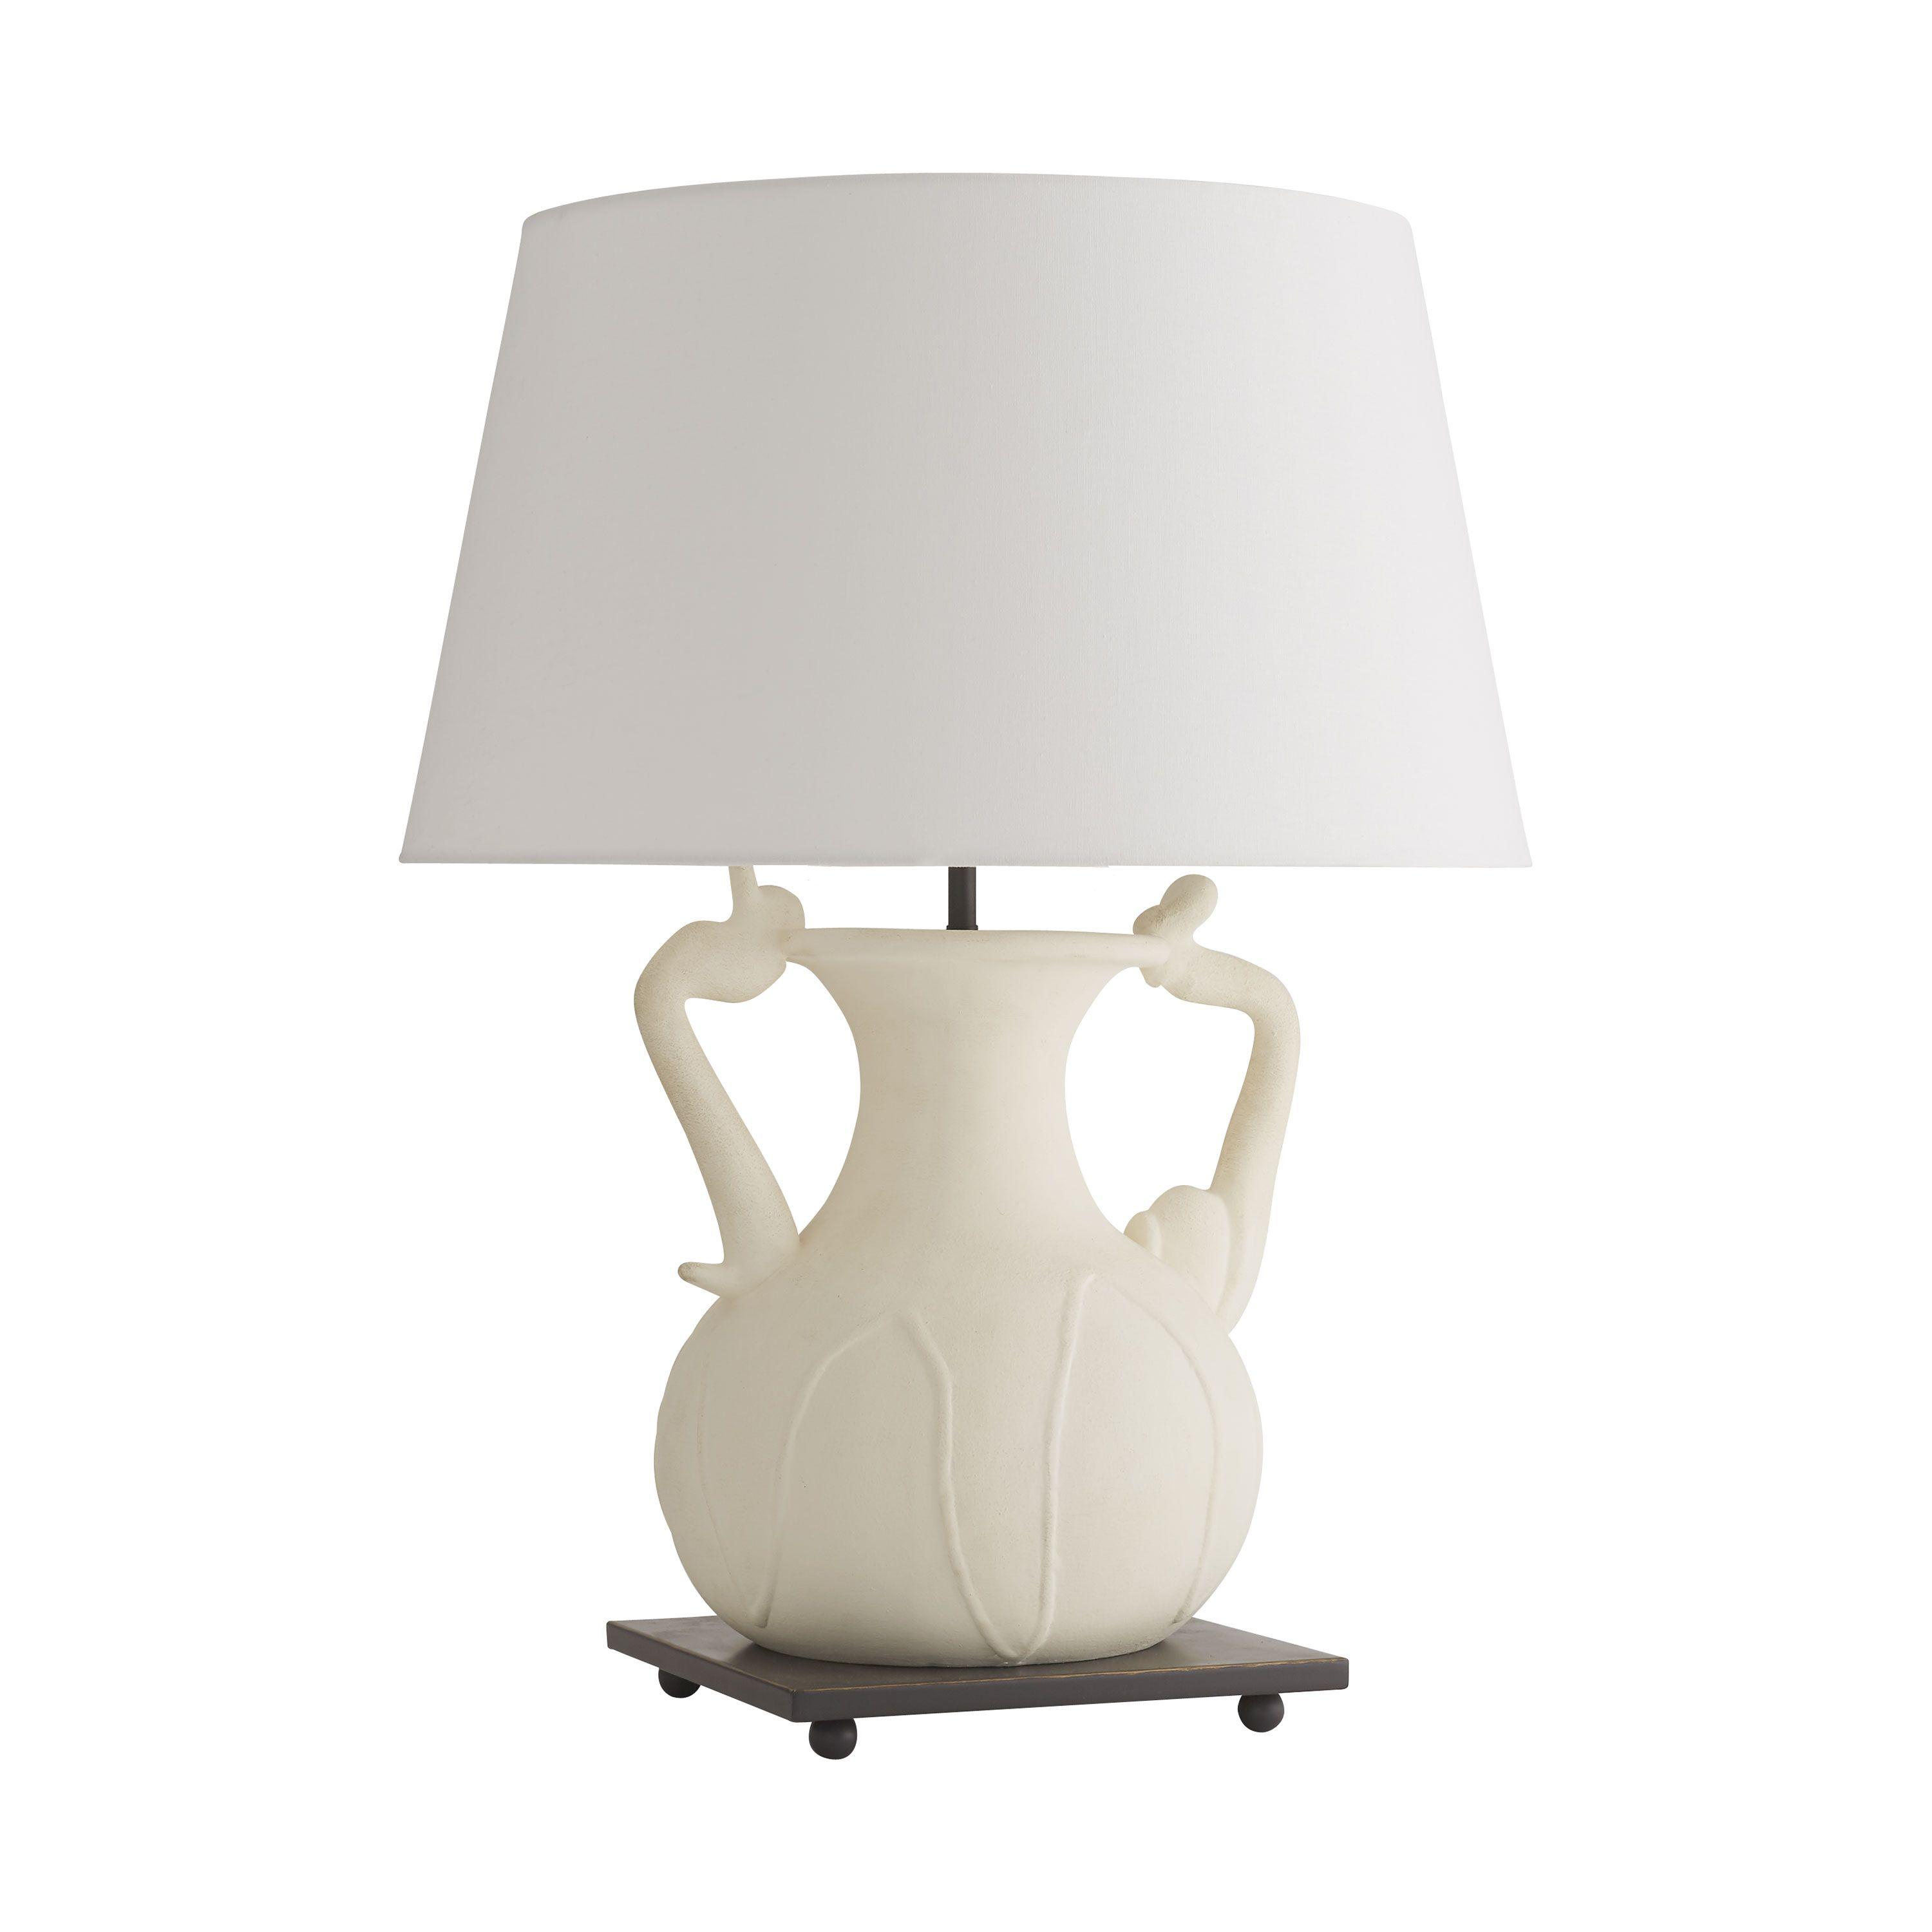 Купить Настольная лампа Positano Lamp в интернет-магазине roooms.ru